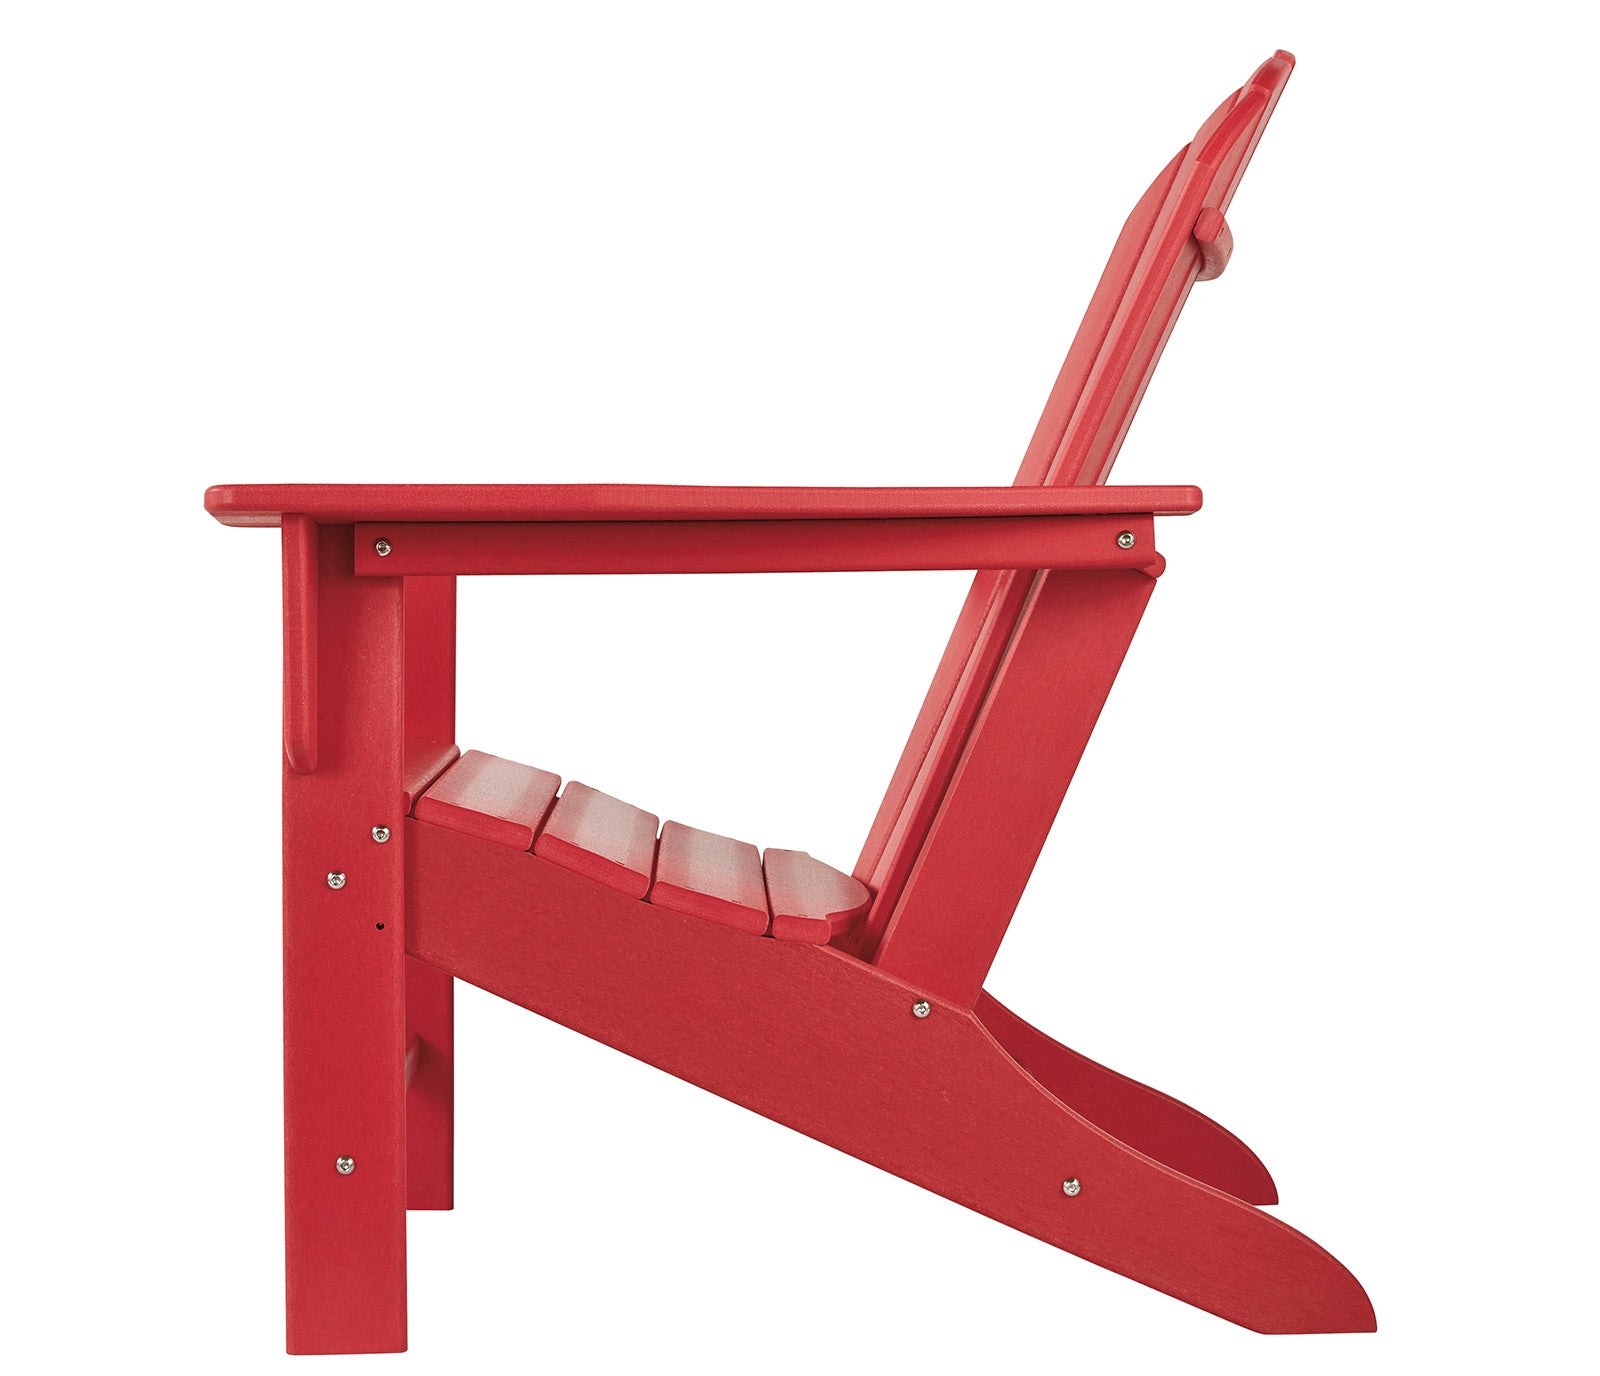 Sundown Treasure Adirondack Chair - Red